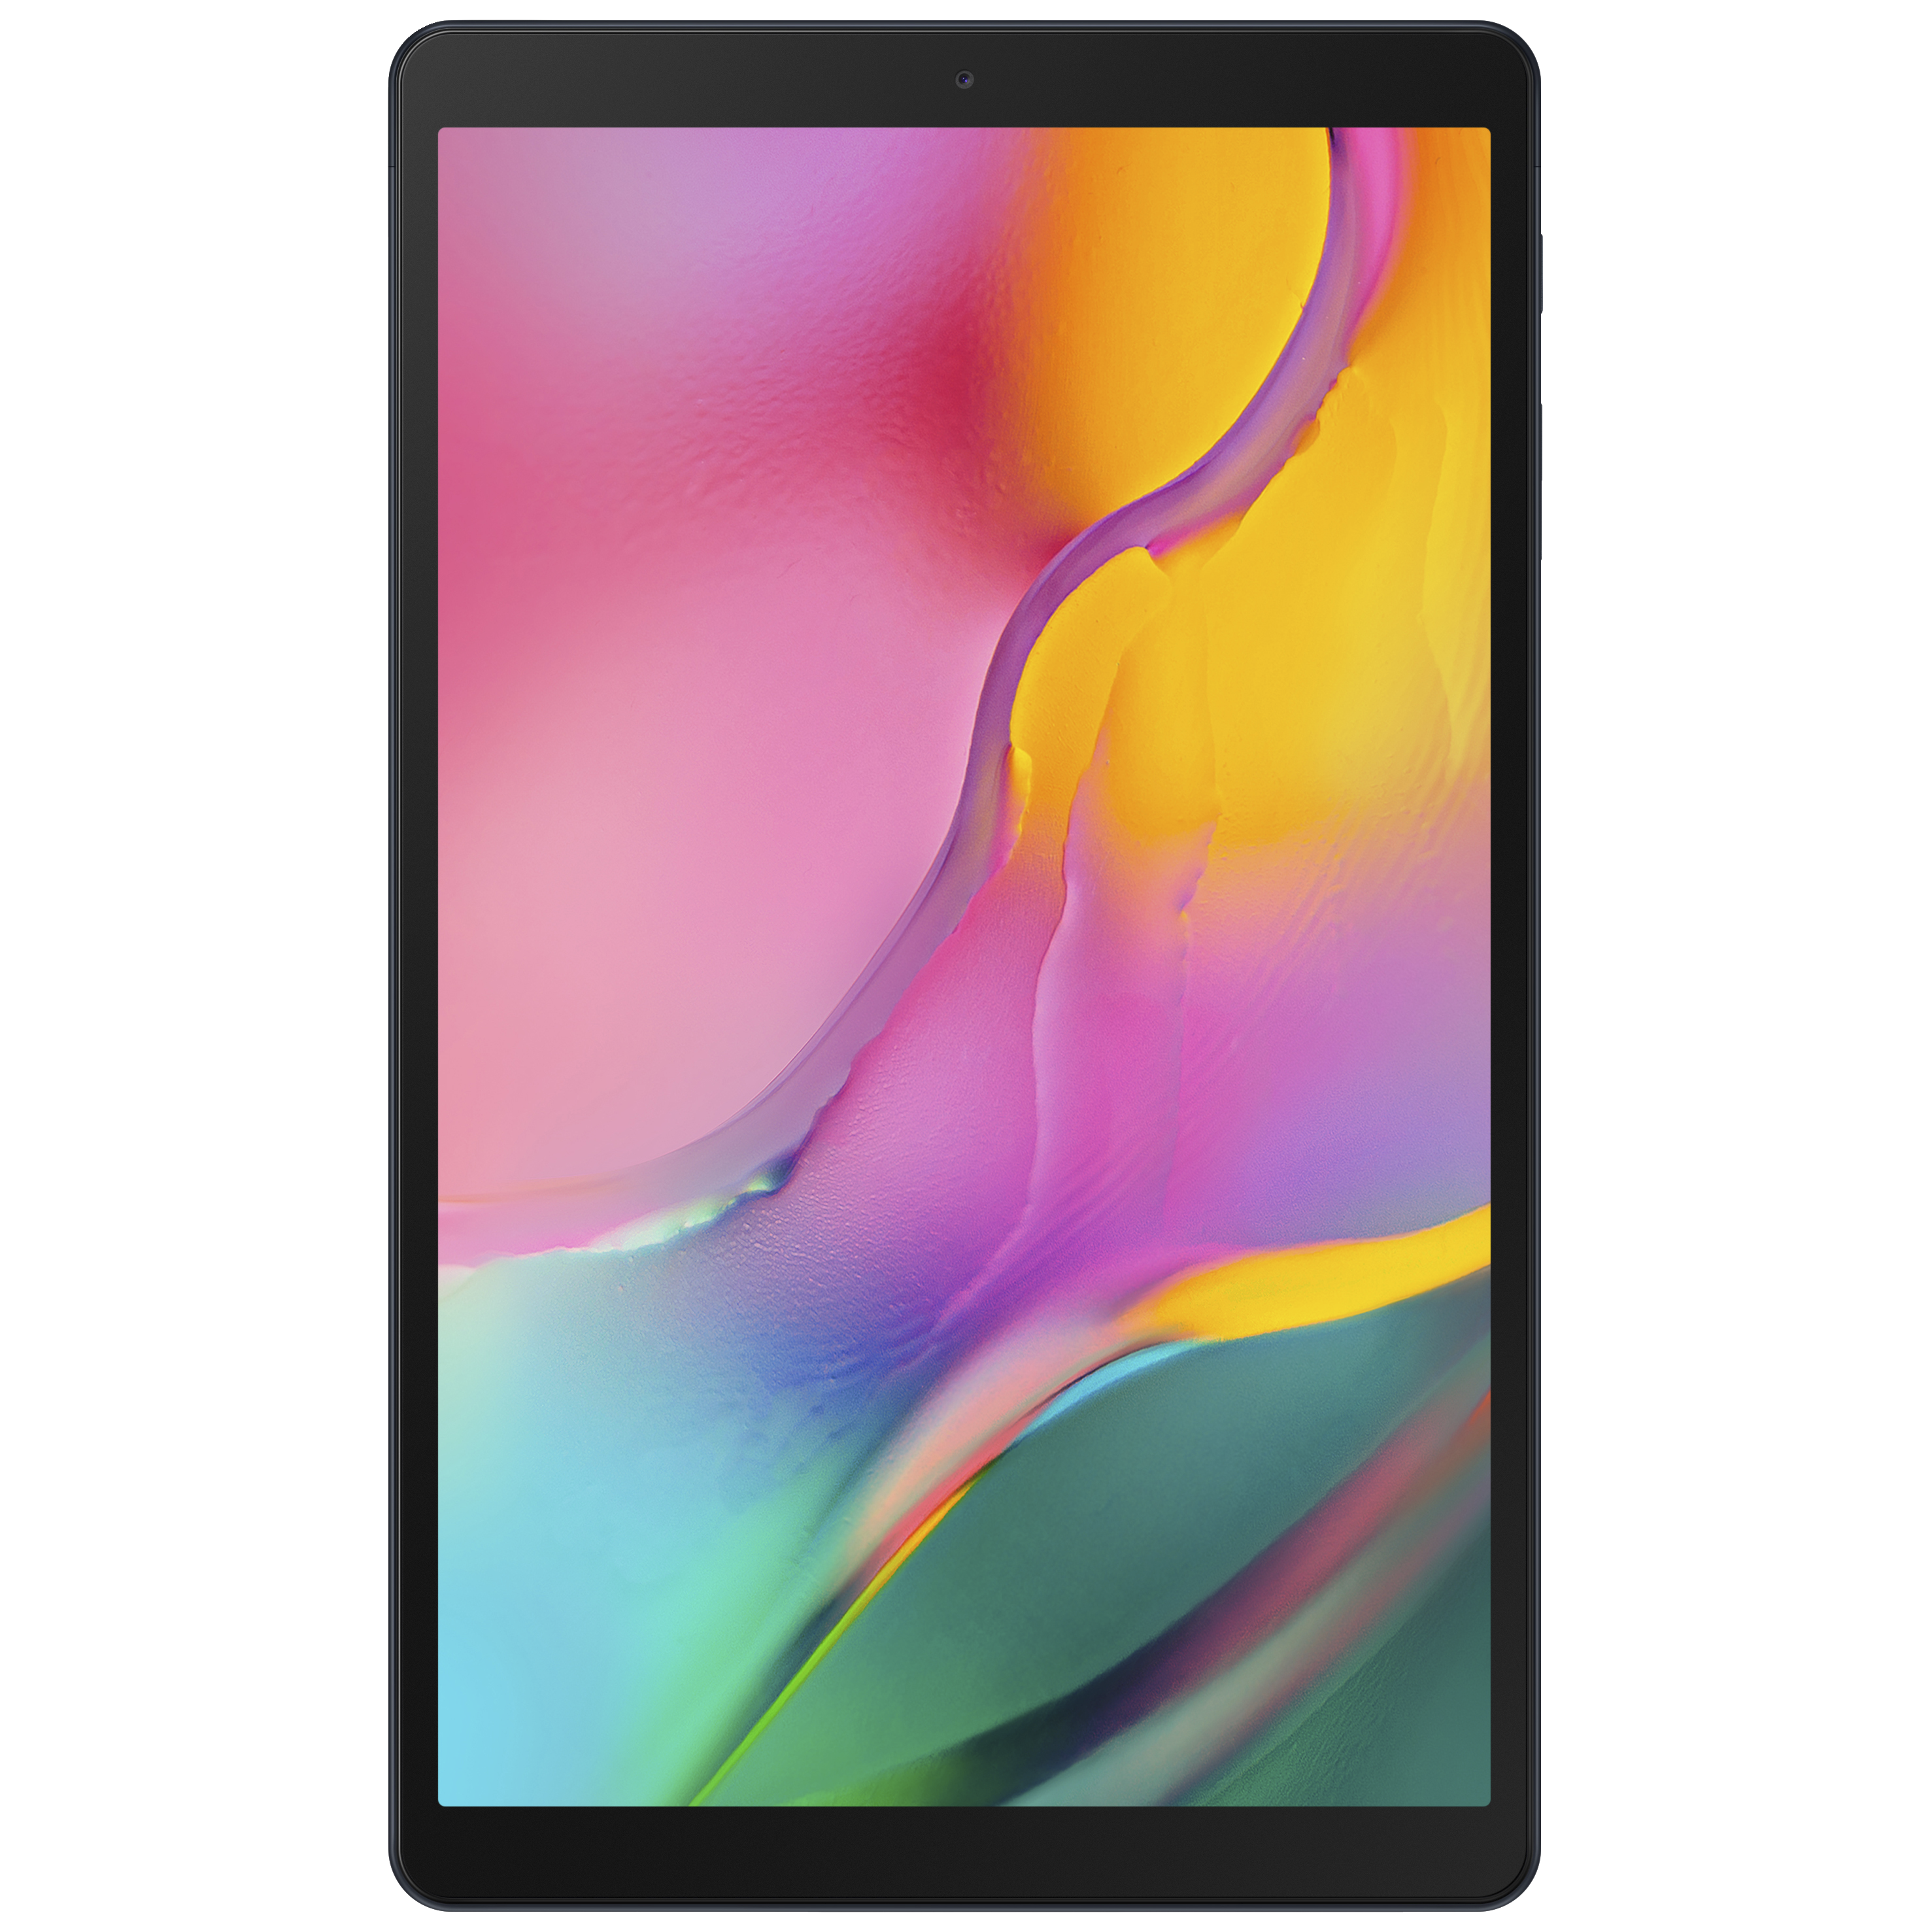 Samsung Galaxy Tab A 10.1 WiFi 2019 64 GB (svart) - iPad ...